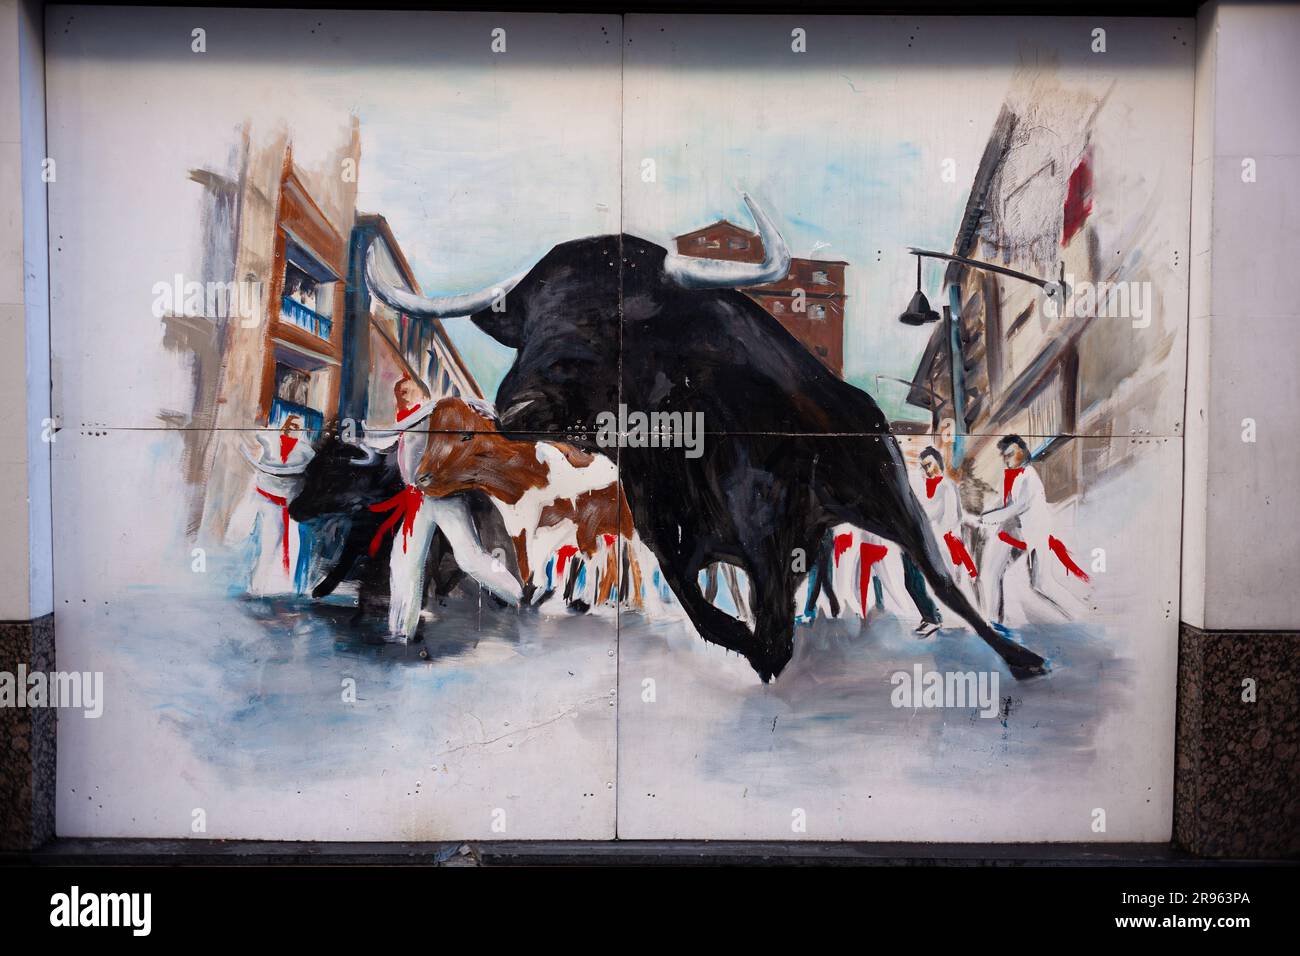 Pampelune, Espagne - juillet 31 : peinture représentant un taureau lors du festival San Fermin à Pampelune Banque D'Images